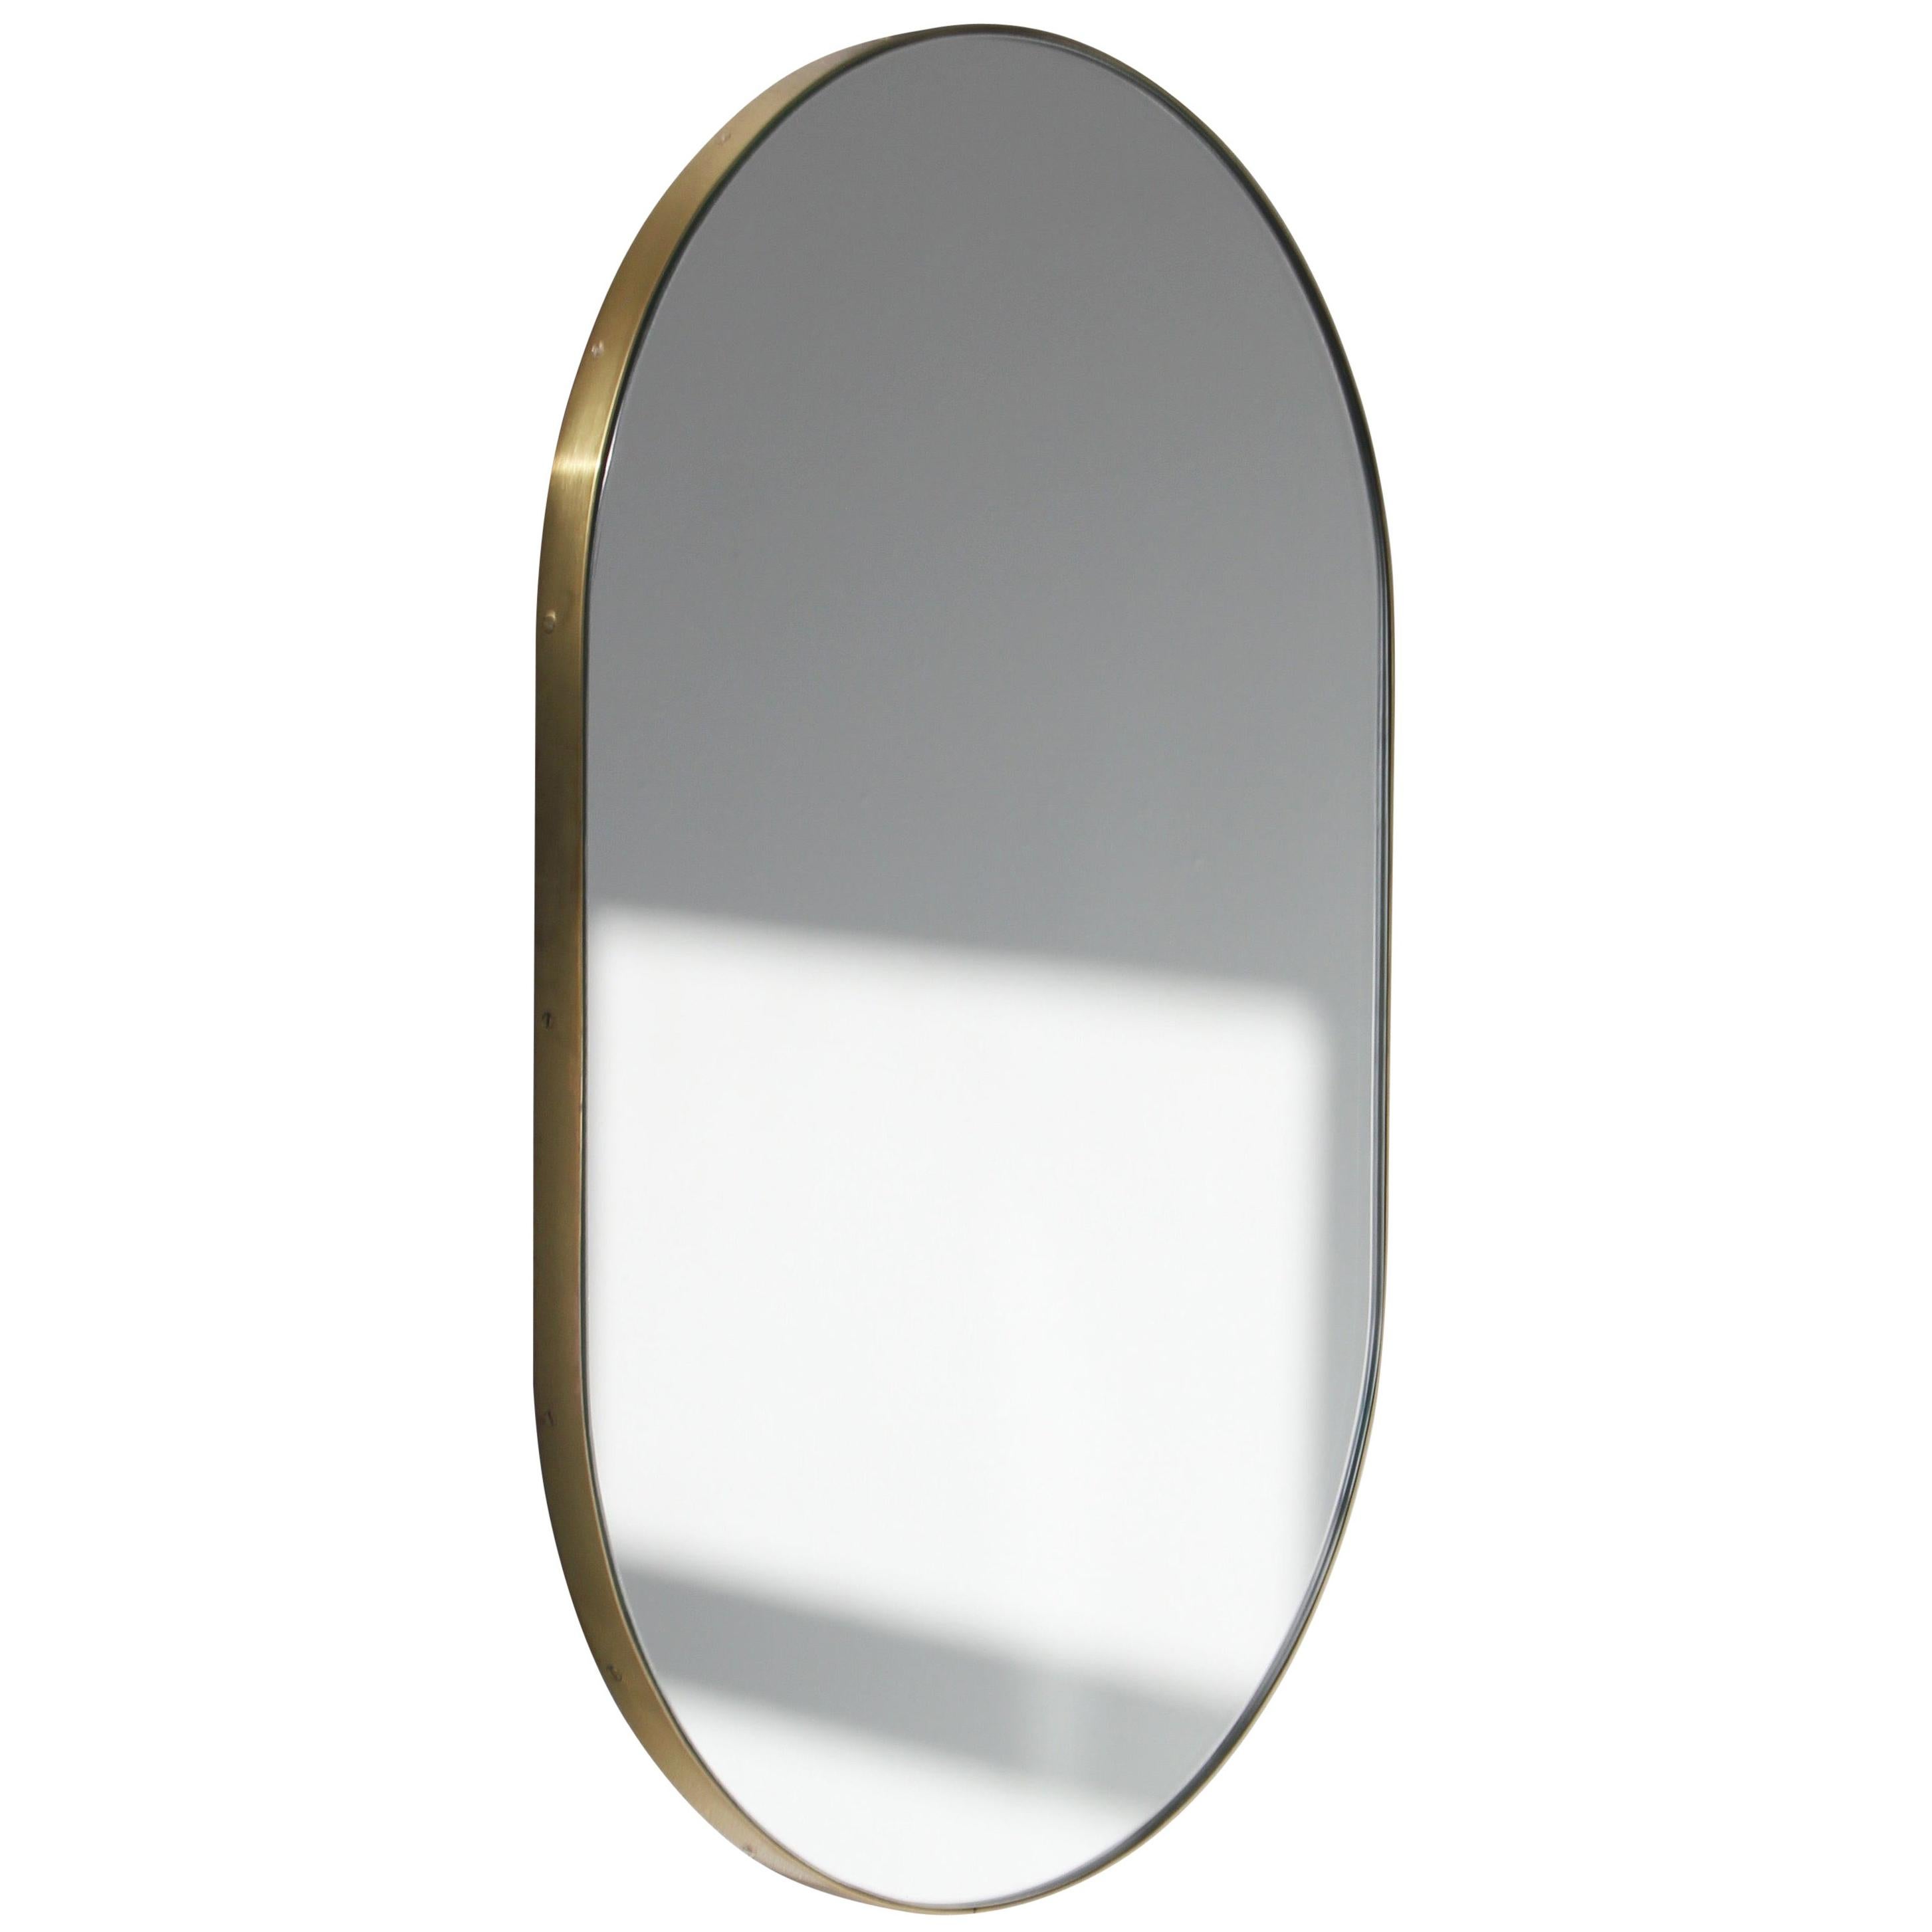 Capsula Capsule Pill Shape Elegant Spiegel mit Messingrahmen, groß